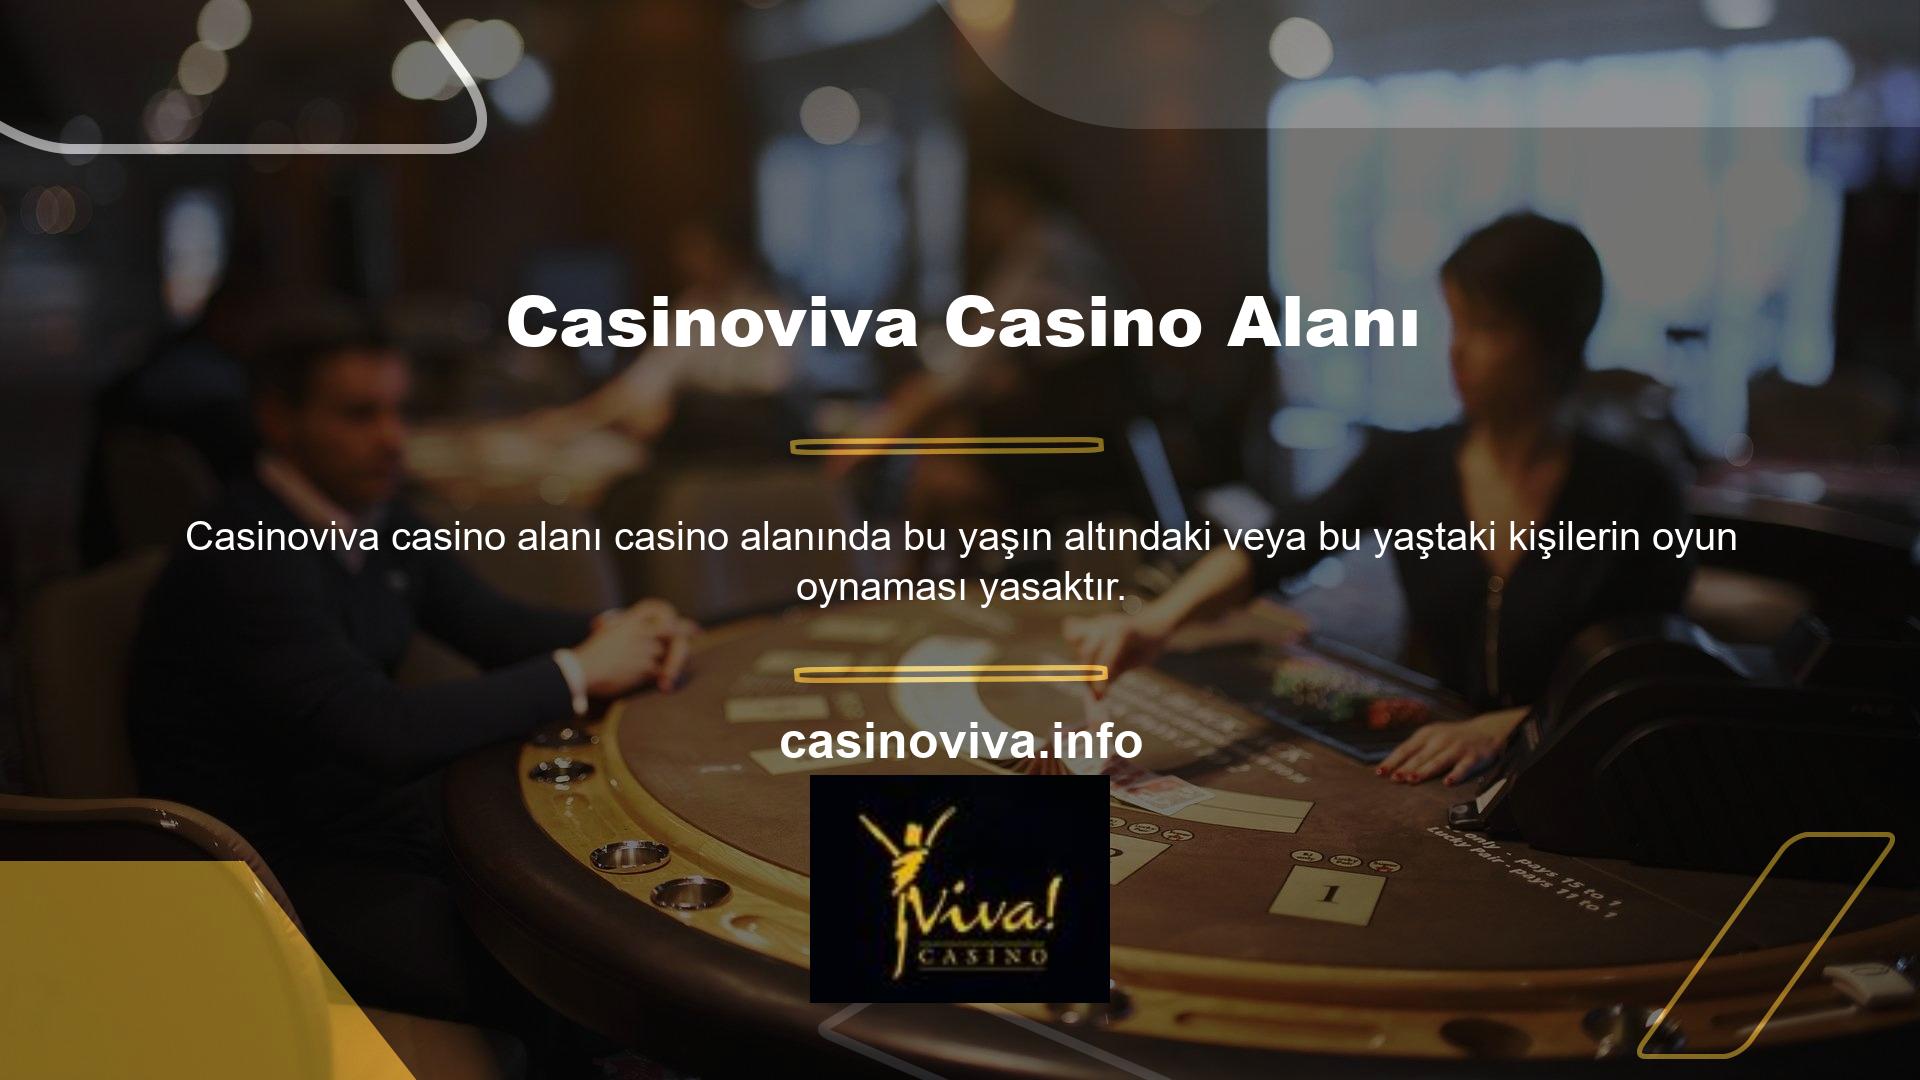 Bu nedenle Casinoviva Sistemine üye olmak isteyen kullanıcıların en az 18 yaşını doldurmuş olmaları gerekmektedir